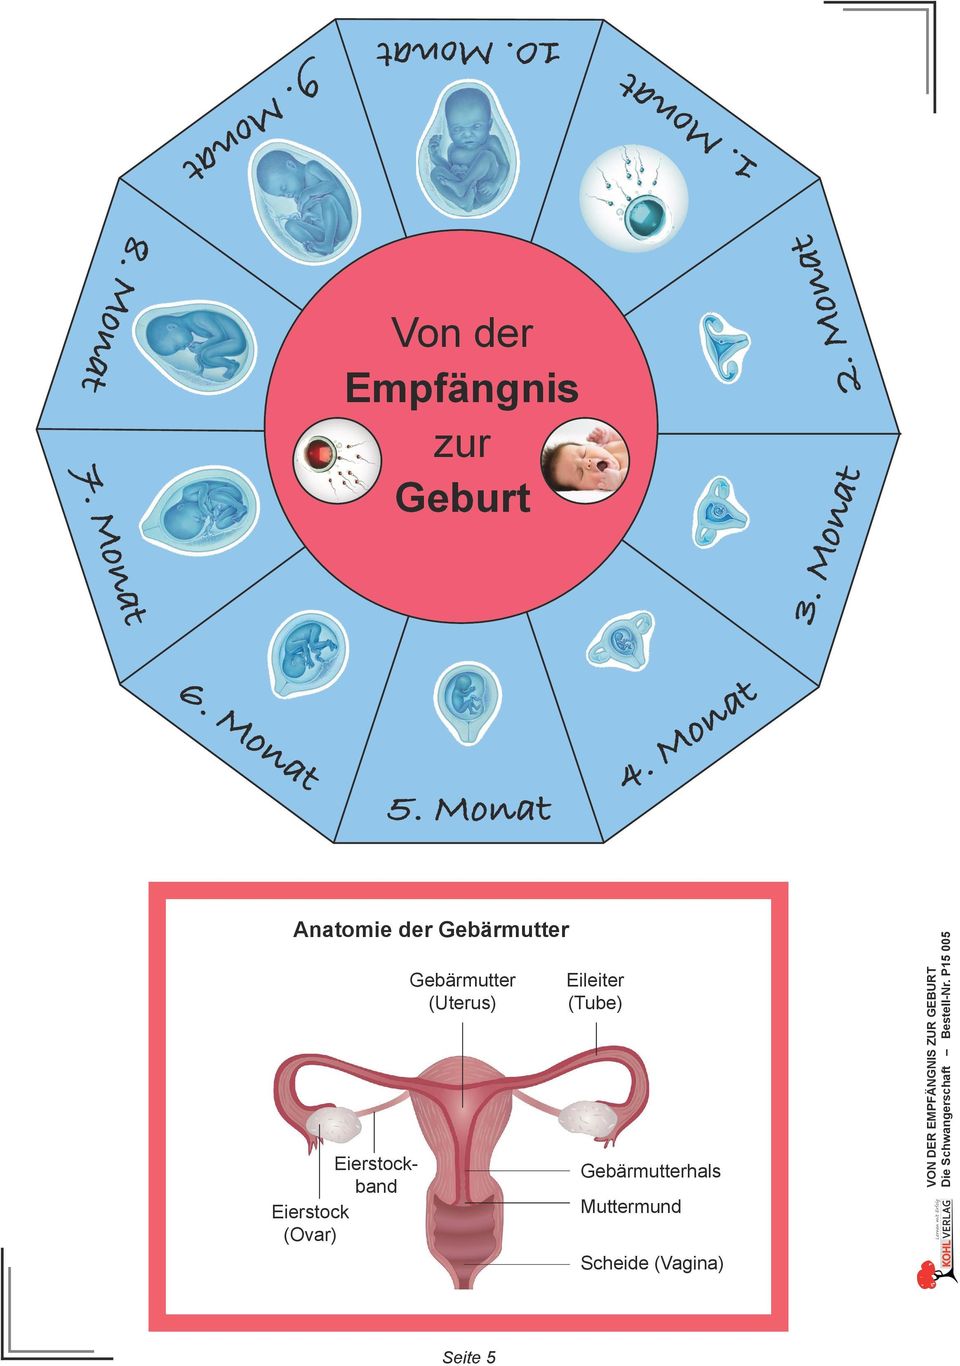 (Tube) Gebärmutterhals Muttermund Scheide (Vagina) VON DER